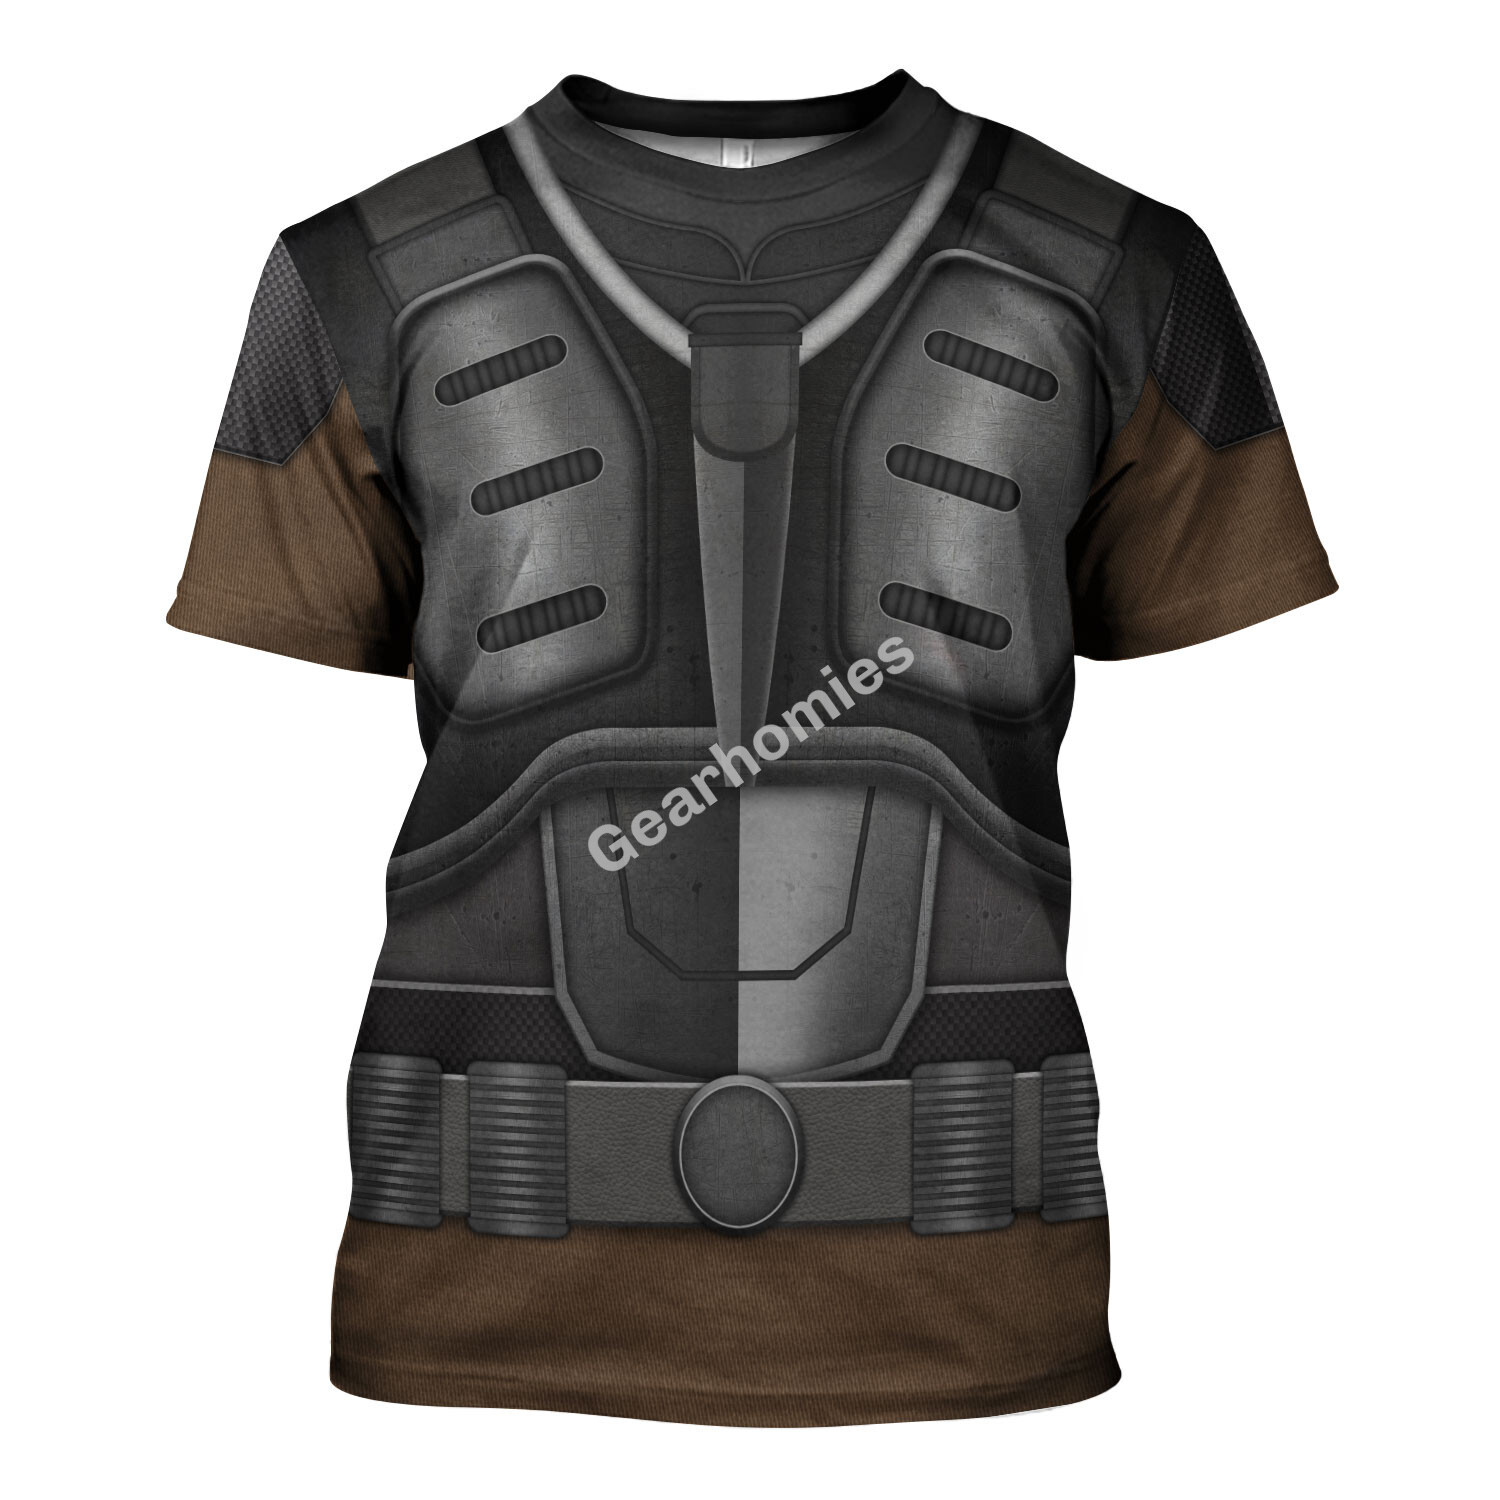 Cobra Mercenary Major Bludd Hoodies Sweatshirt T-Shirt Hawaiian ...